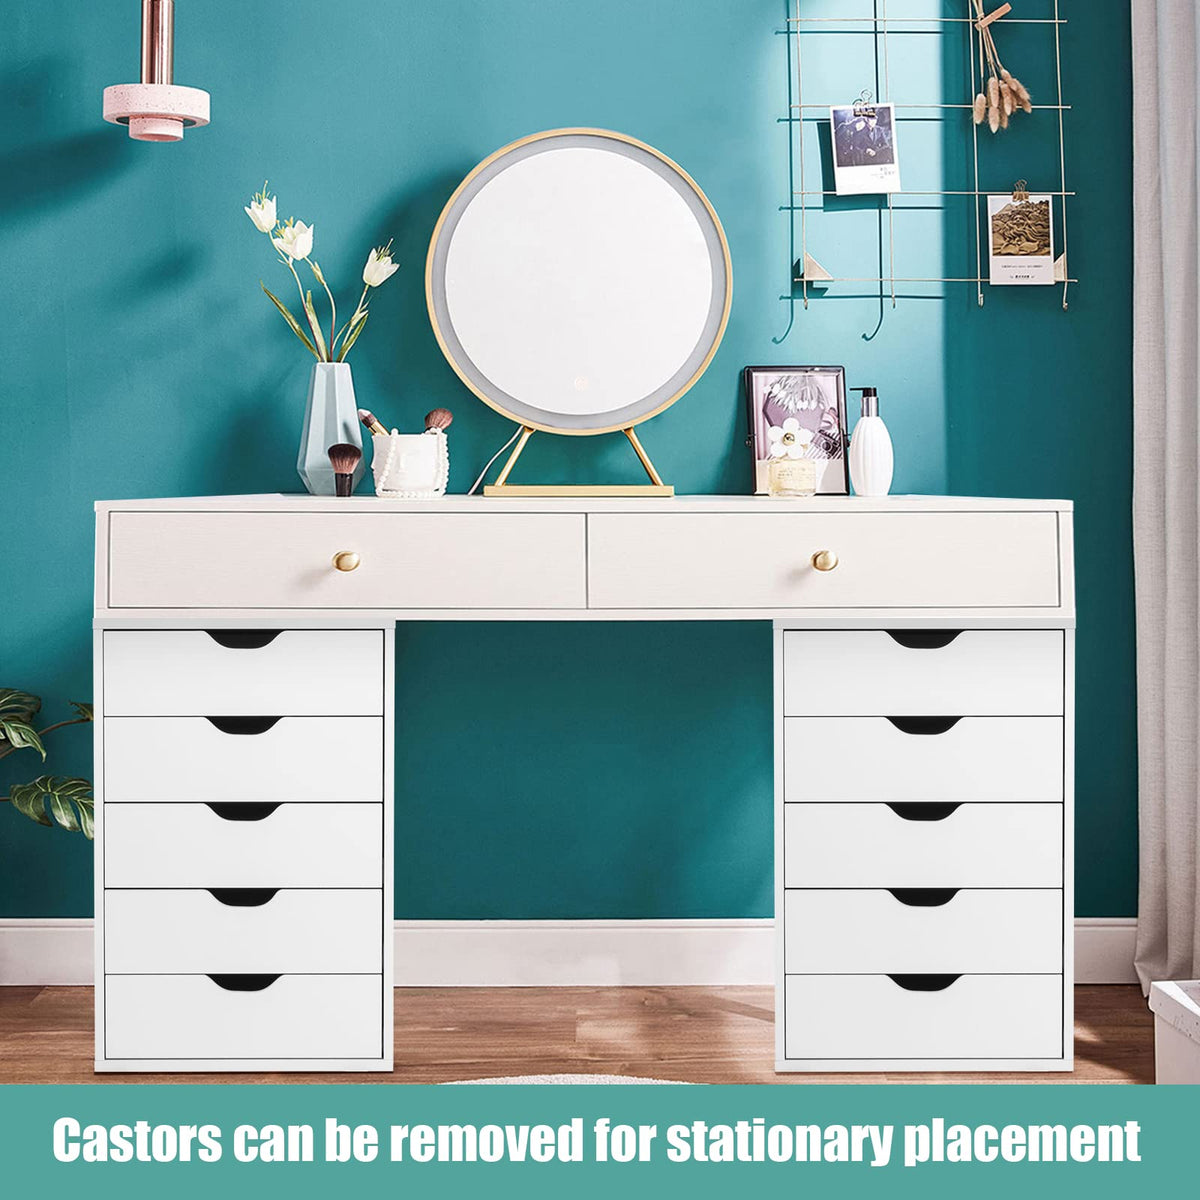 5-Drawer File Cabinet, Side Cabinet File Pedestal w/ 4 Castors